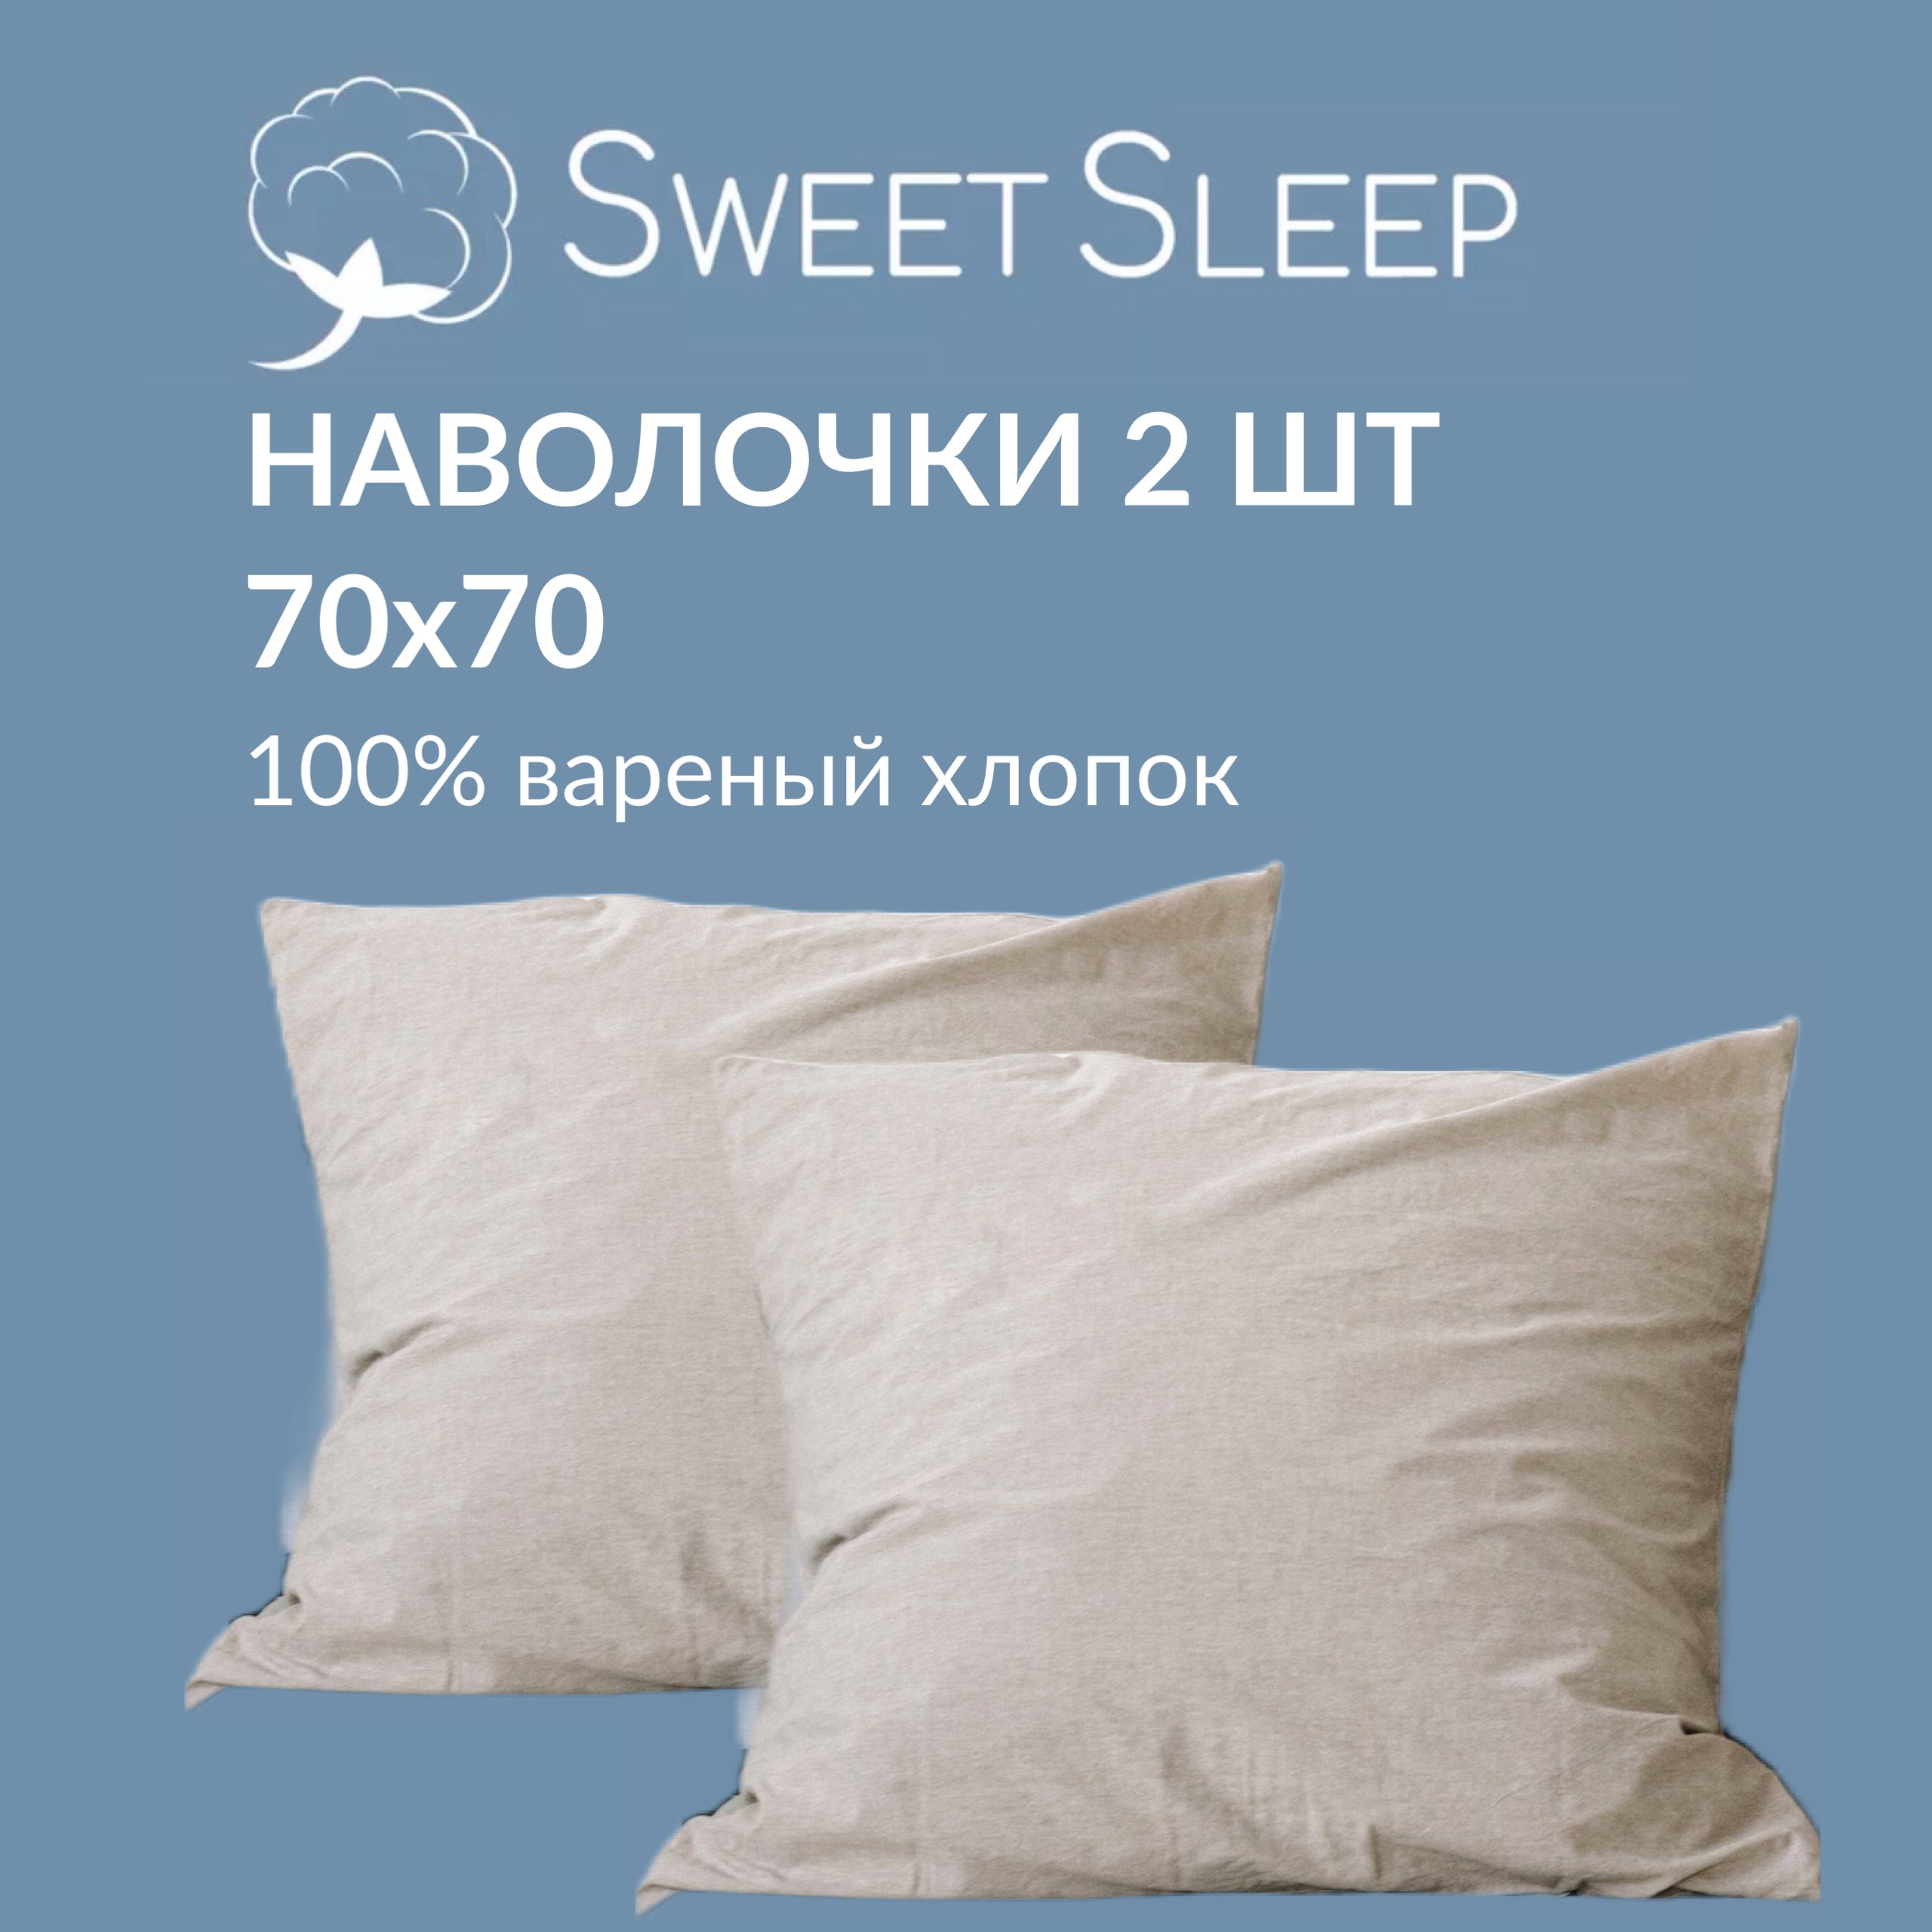 Набор наволочек Sweet Sleep варёный хлопок 70х70 см, светло-бежевый